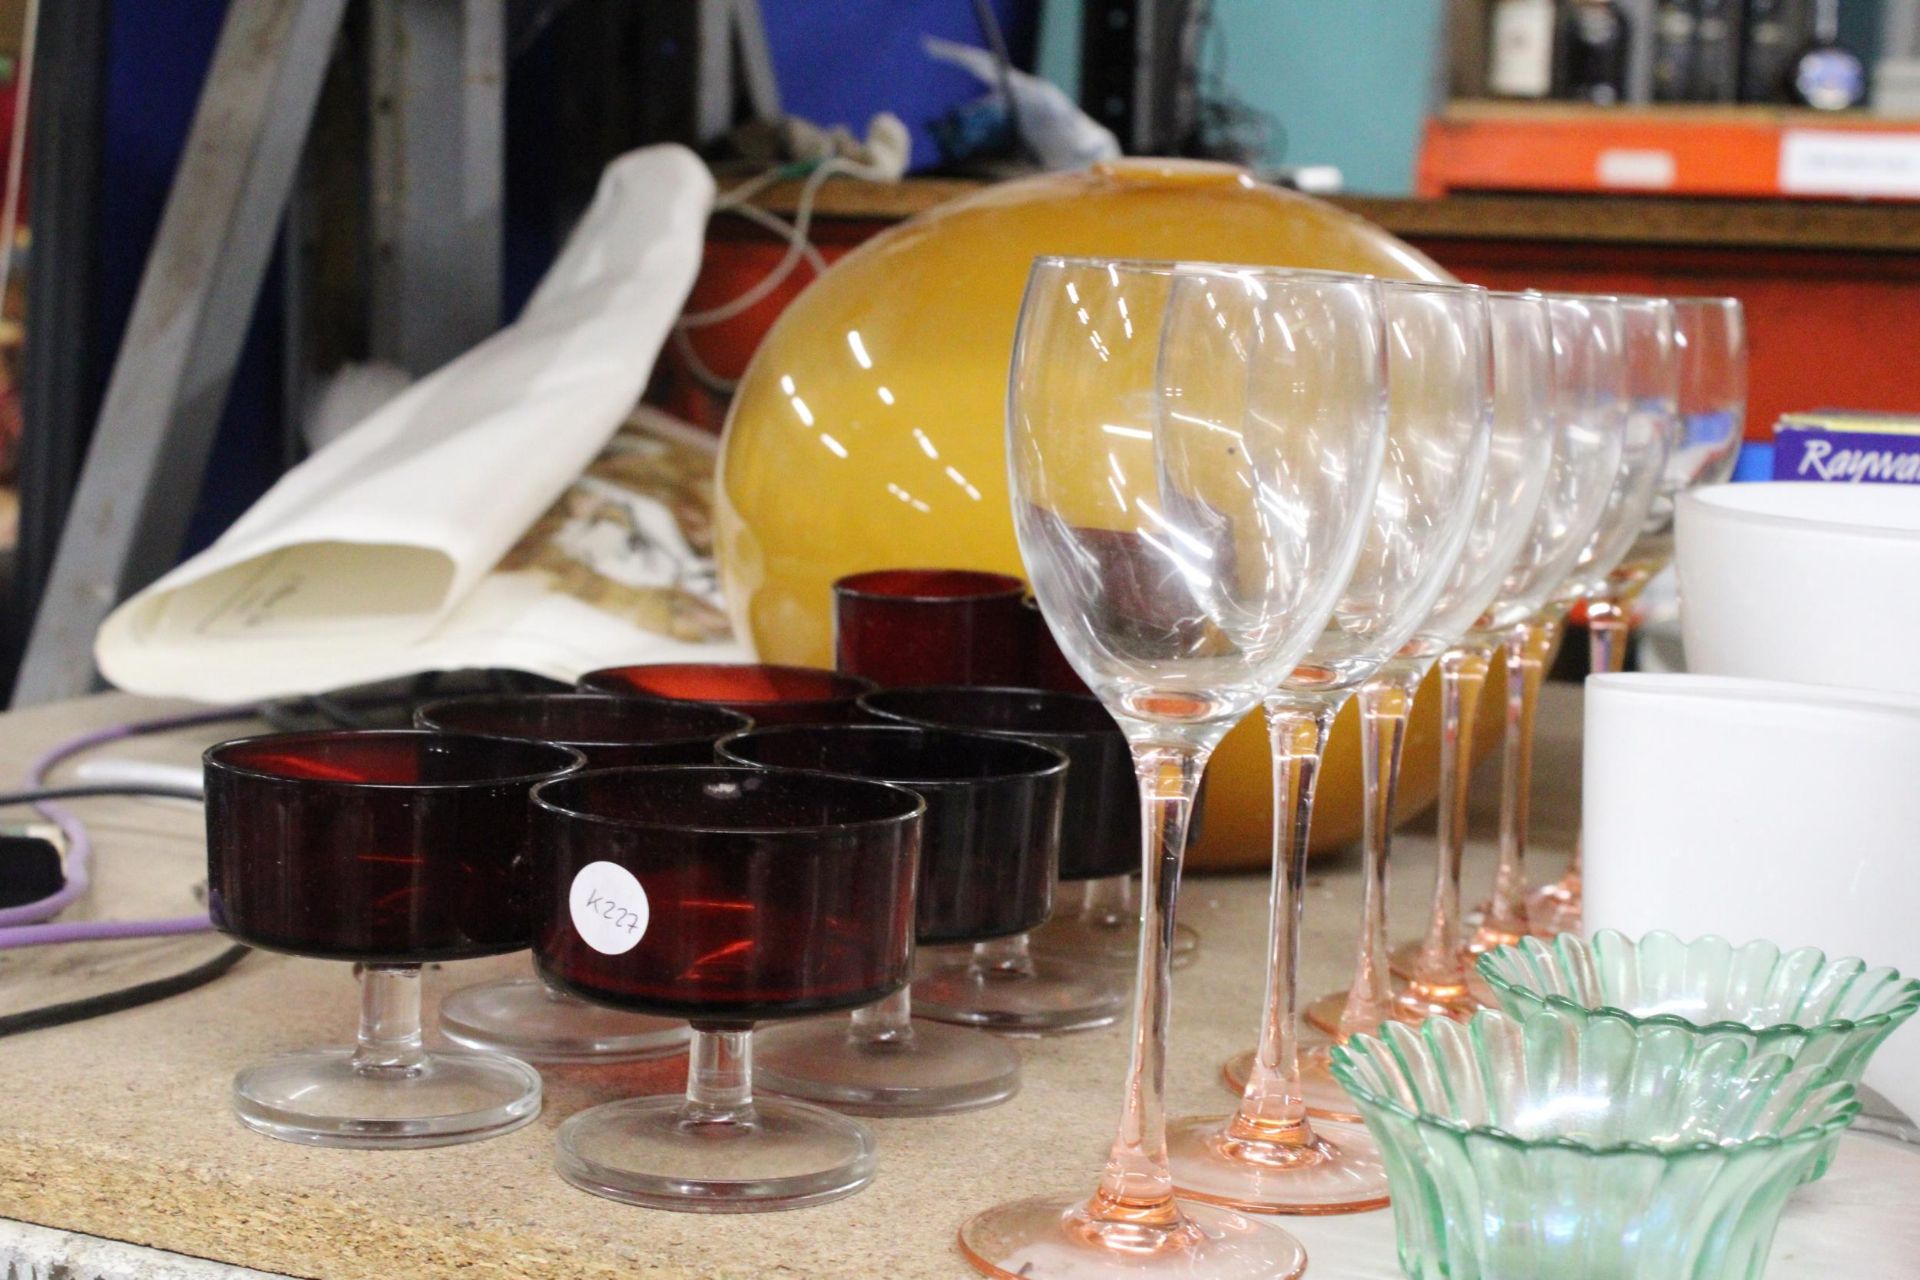 A QUANTITY OF GLASSWARE INCLUDING COLOURED WINE GLASSES, RUBY DESSERT BOWLS, A CRANBERRY JUG, - Bild 2 aus 4